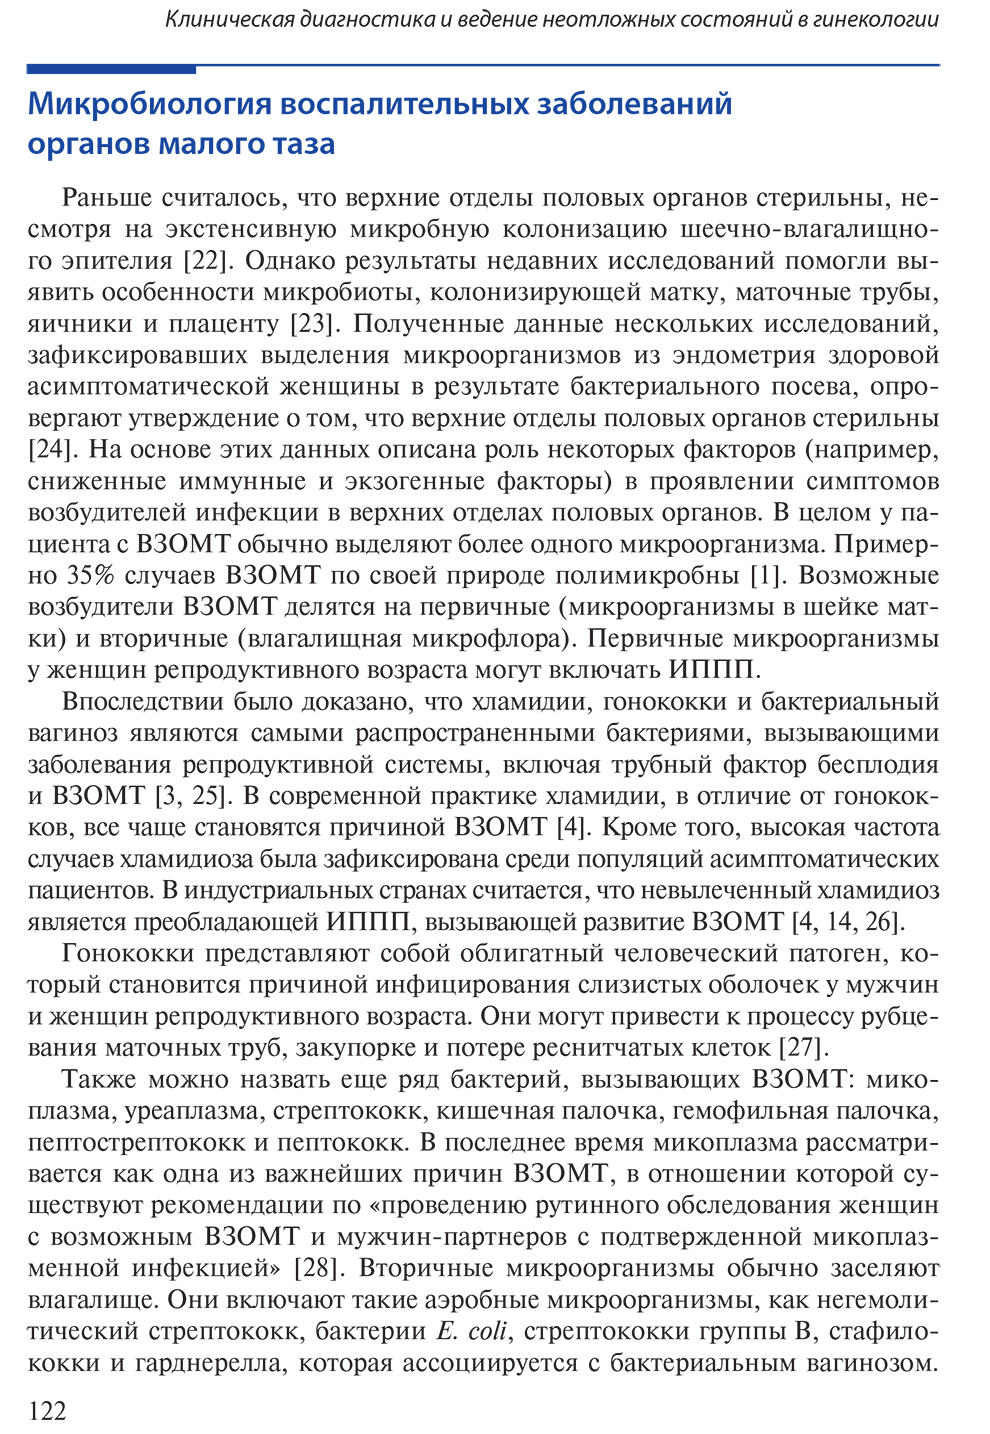  Пример страницы из книги "Клиническая диагностика и ведение неотложных состояний в гинекологии" - Б. Ризка, М. А. Борахая, А. М. Рамзи